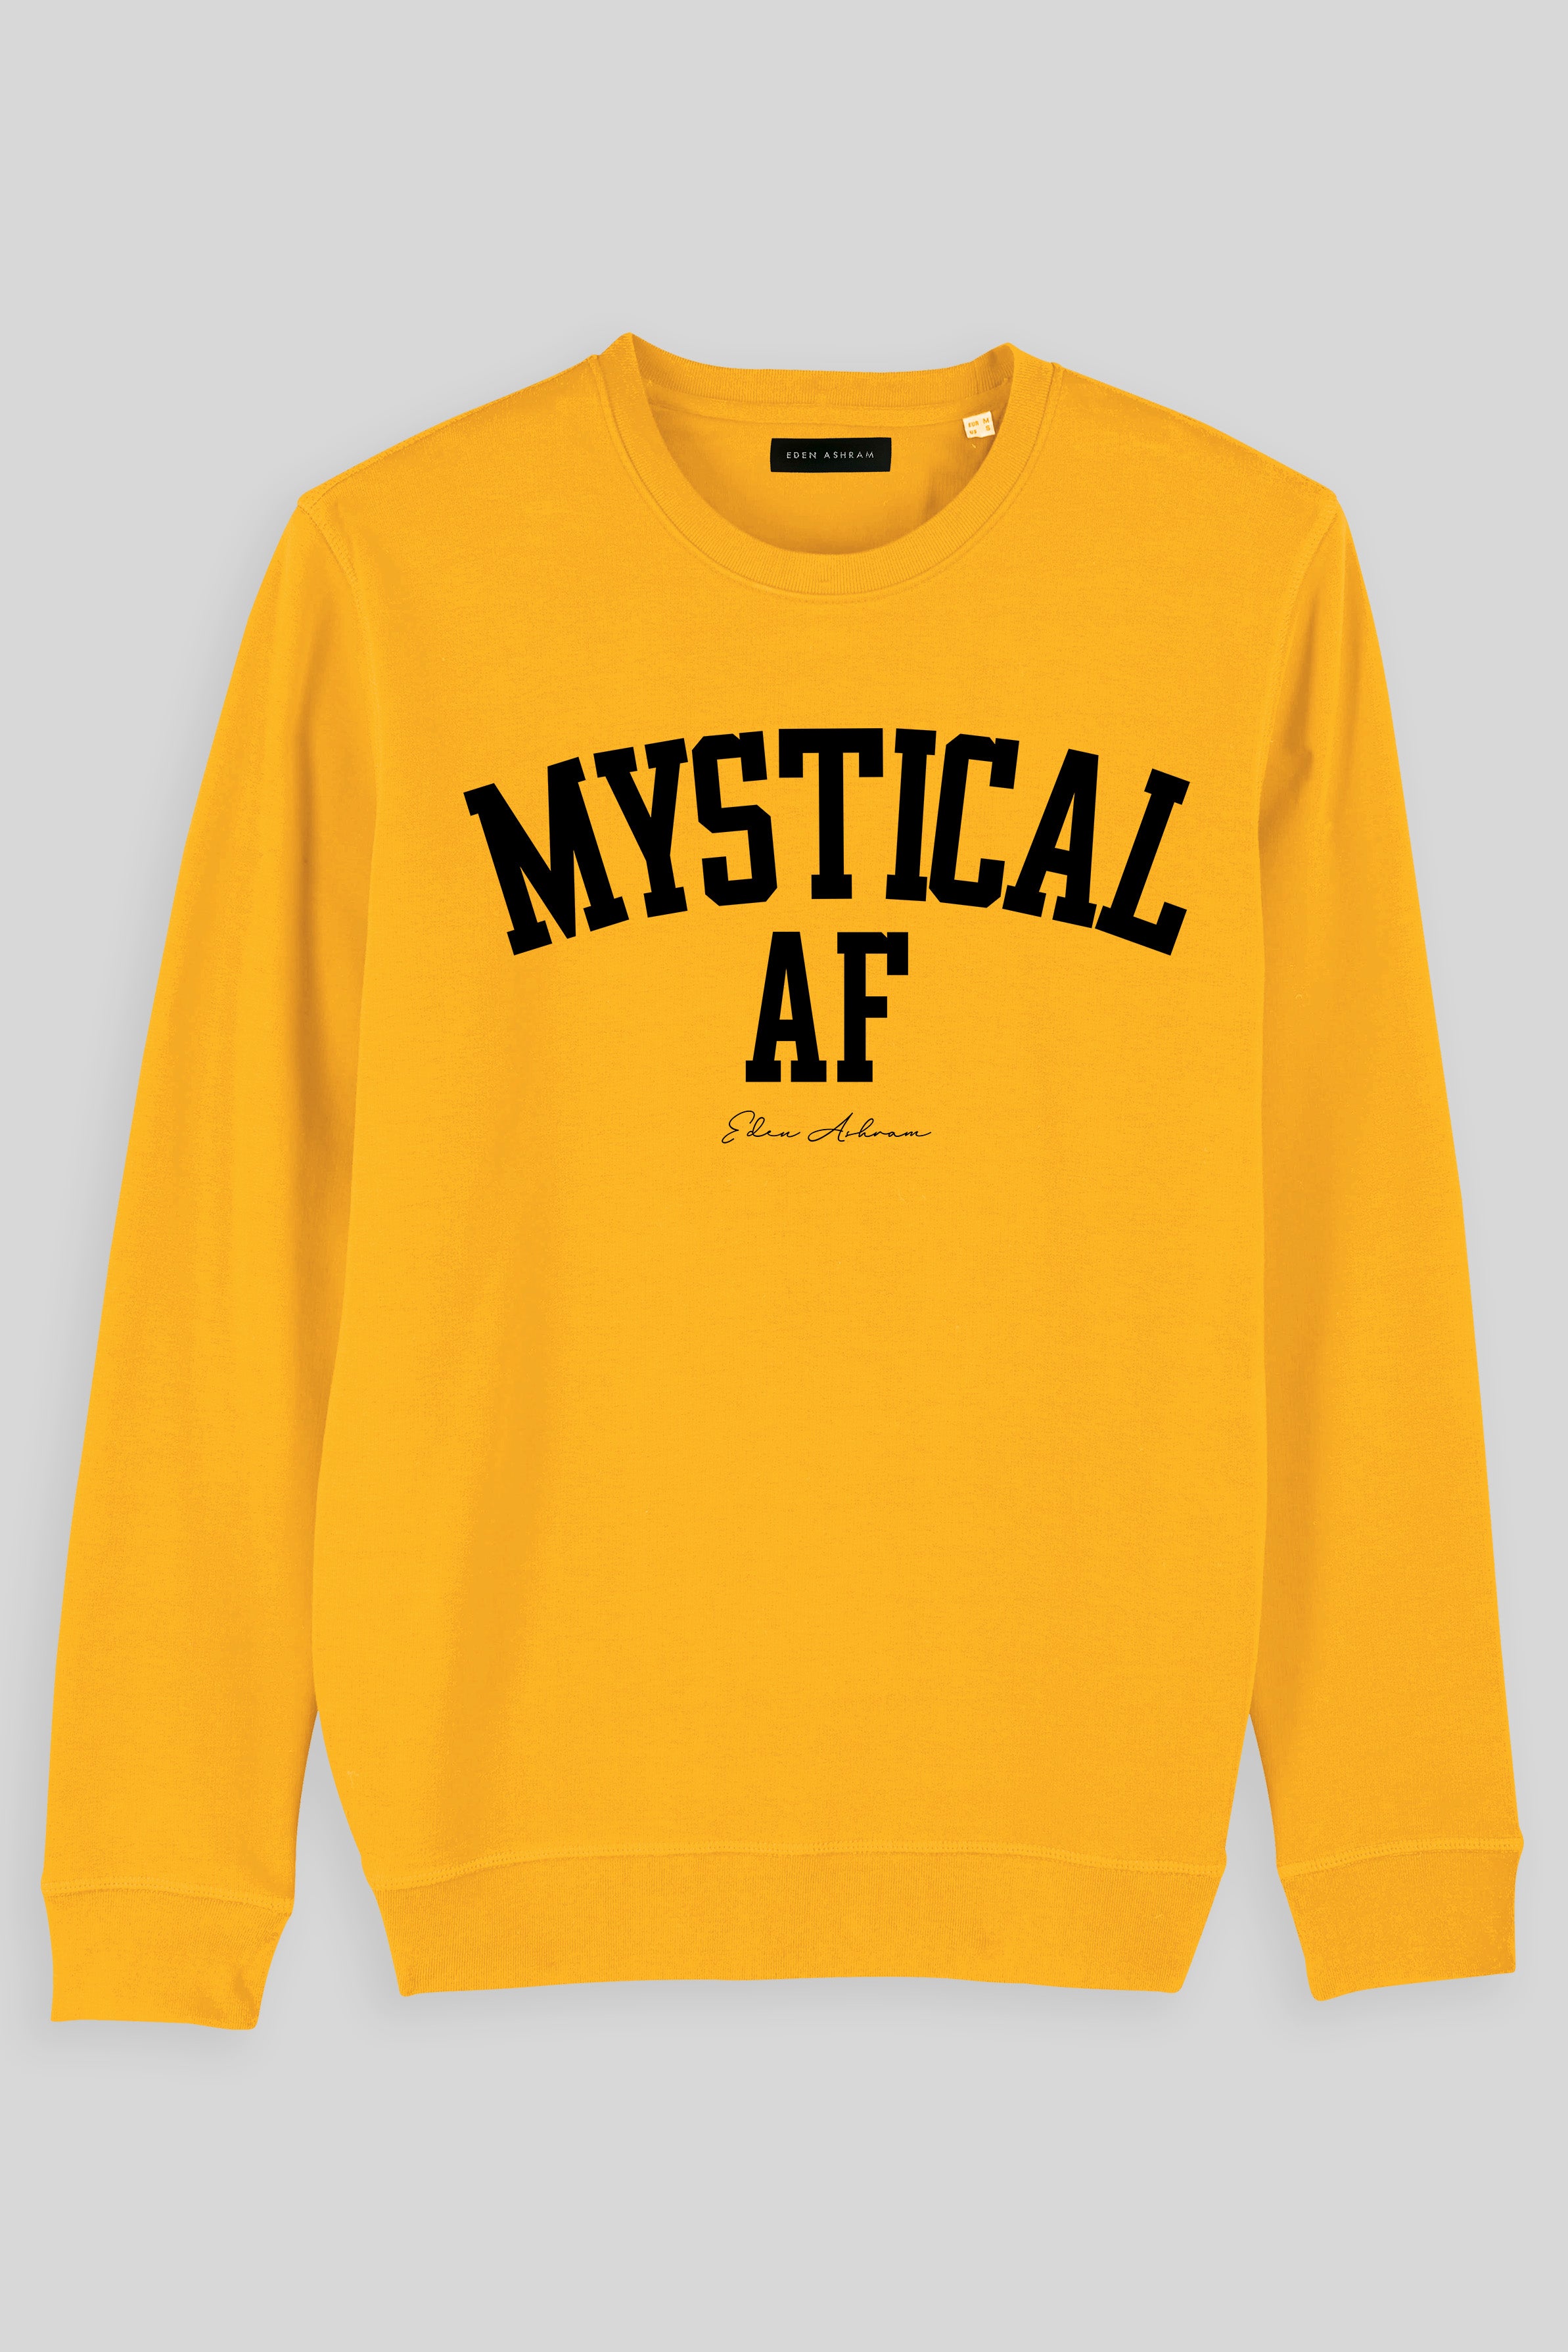 EDEN ASHRAM Mystical AF Premium Crew Neck Sweatshirt Spectra Yellow